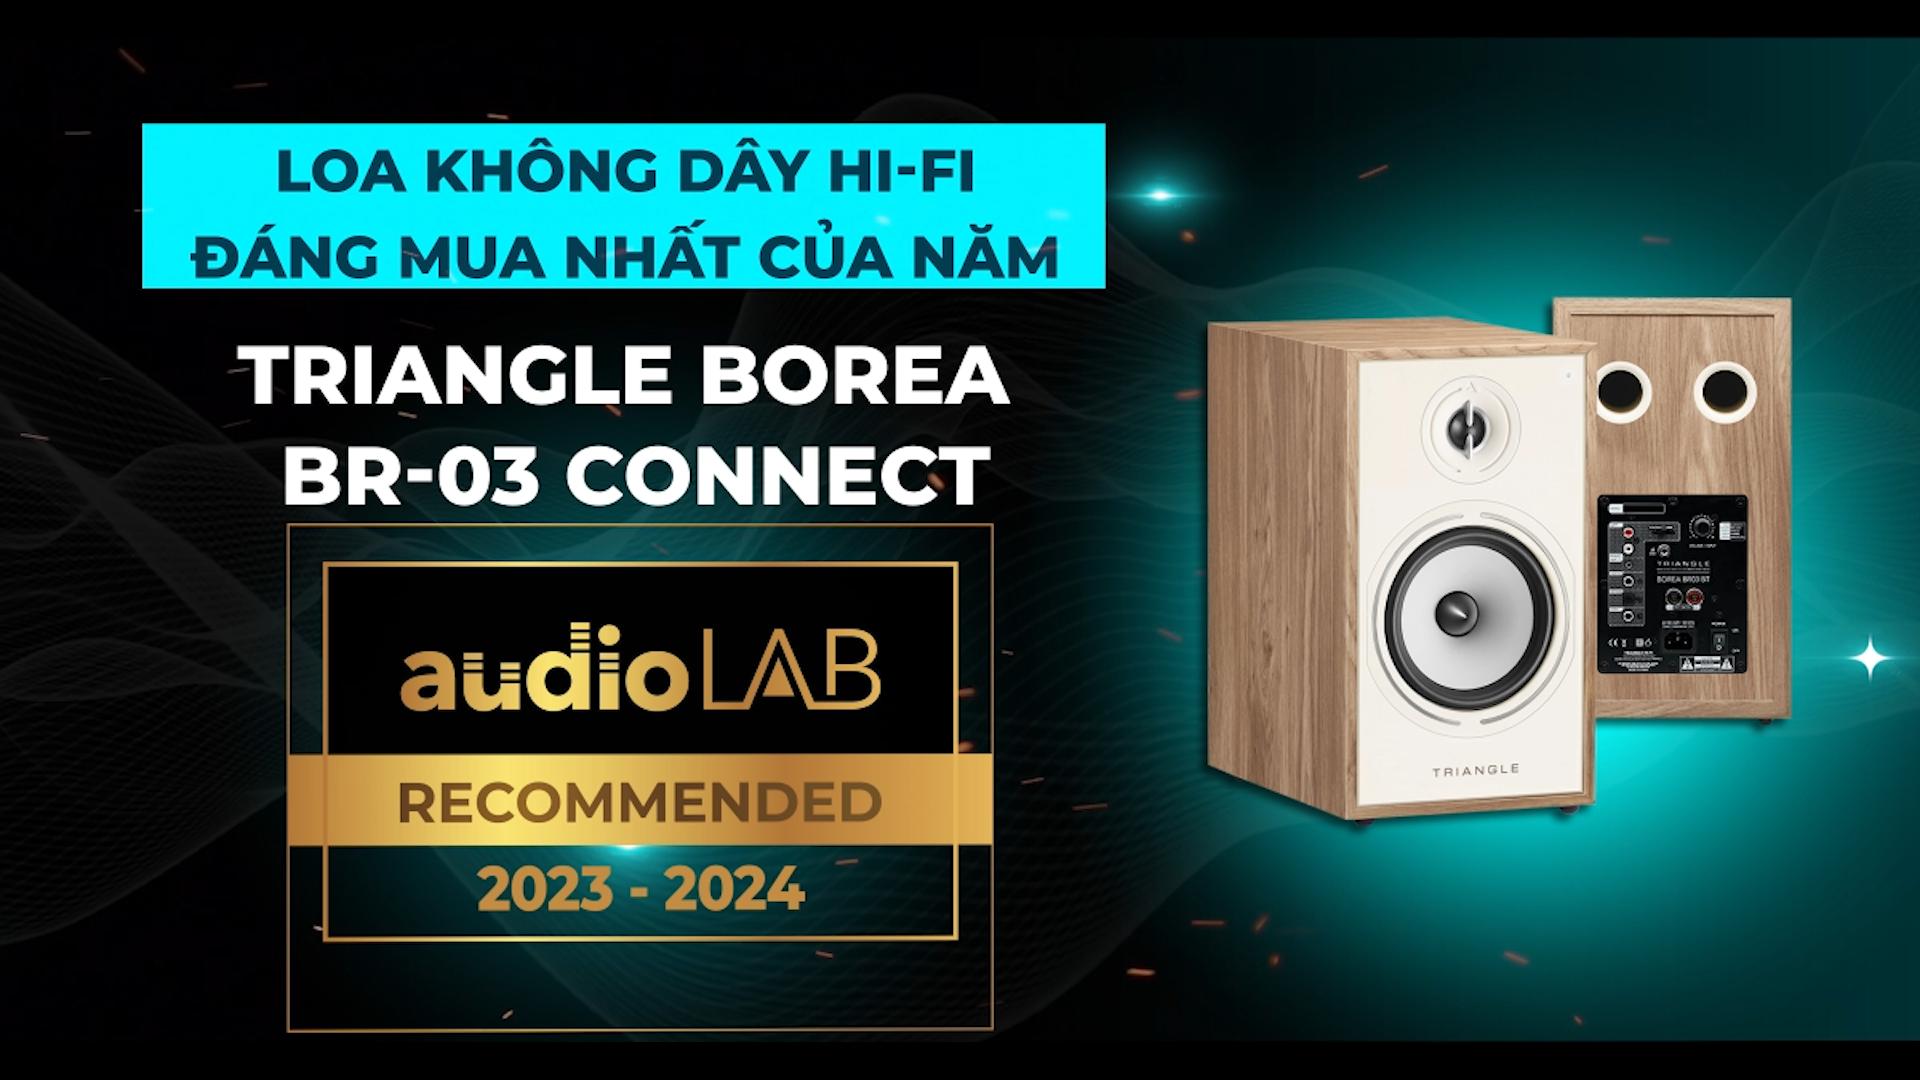 [Audio LAB Recommended] TRIANGLE BOREA BR-03 CONNECT - Loa không dây Hi-Fi đáng mua nhất năm 2023